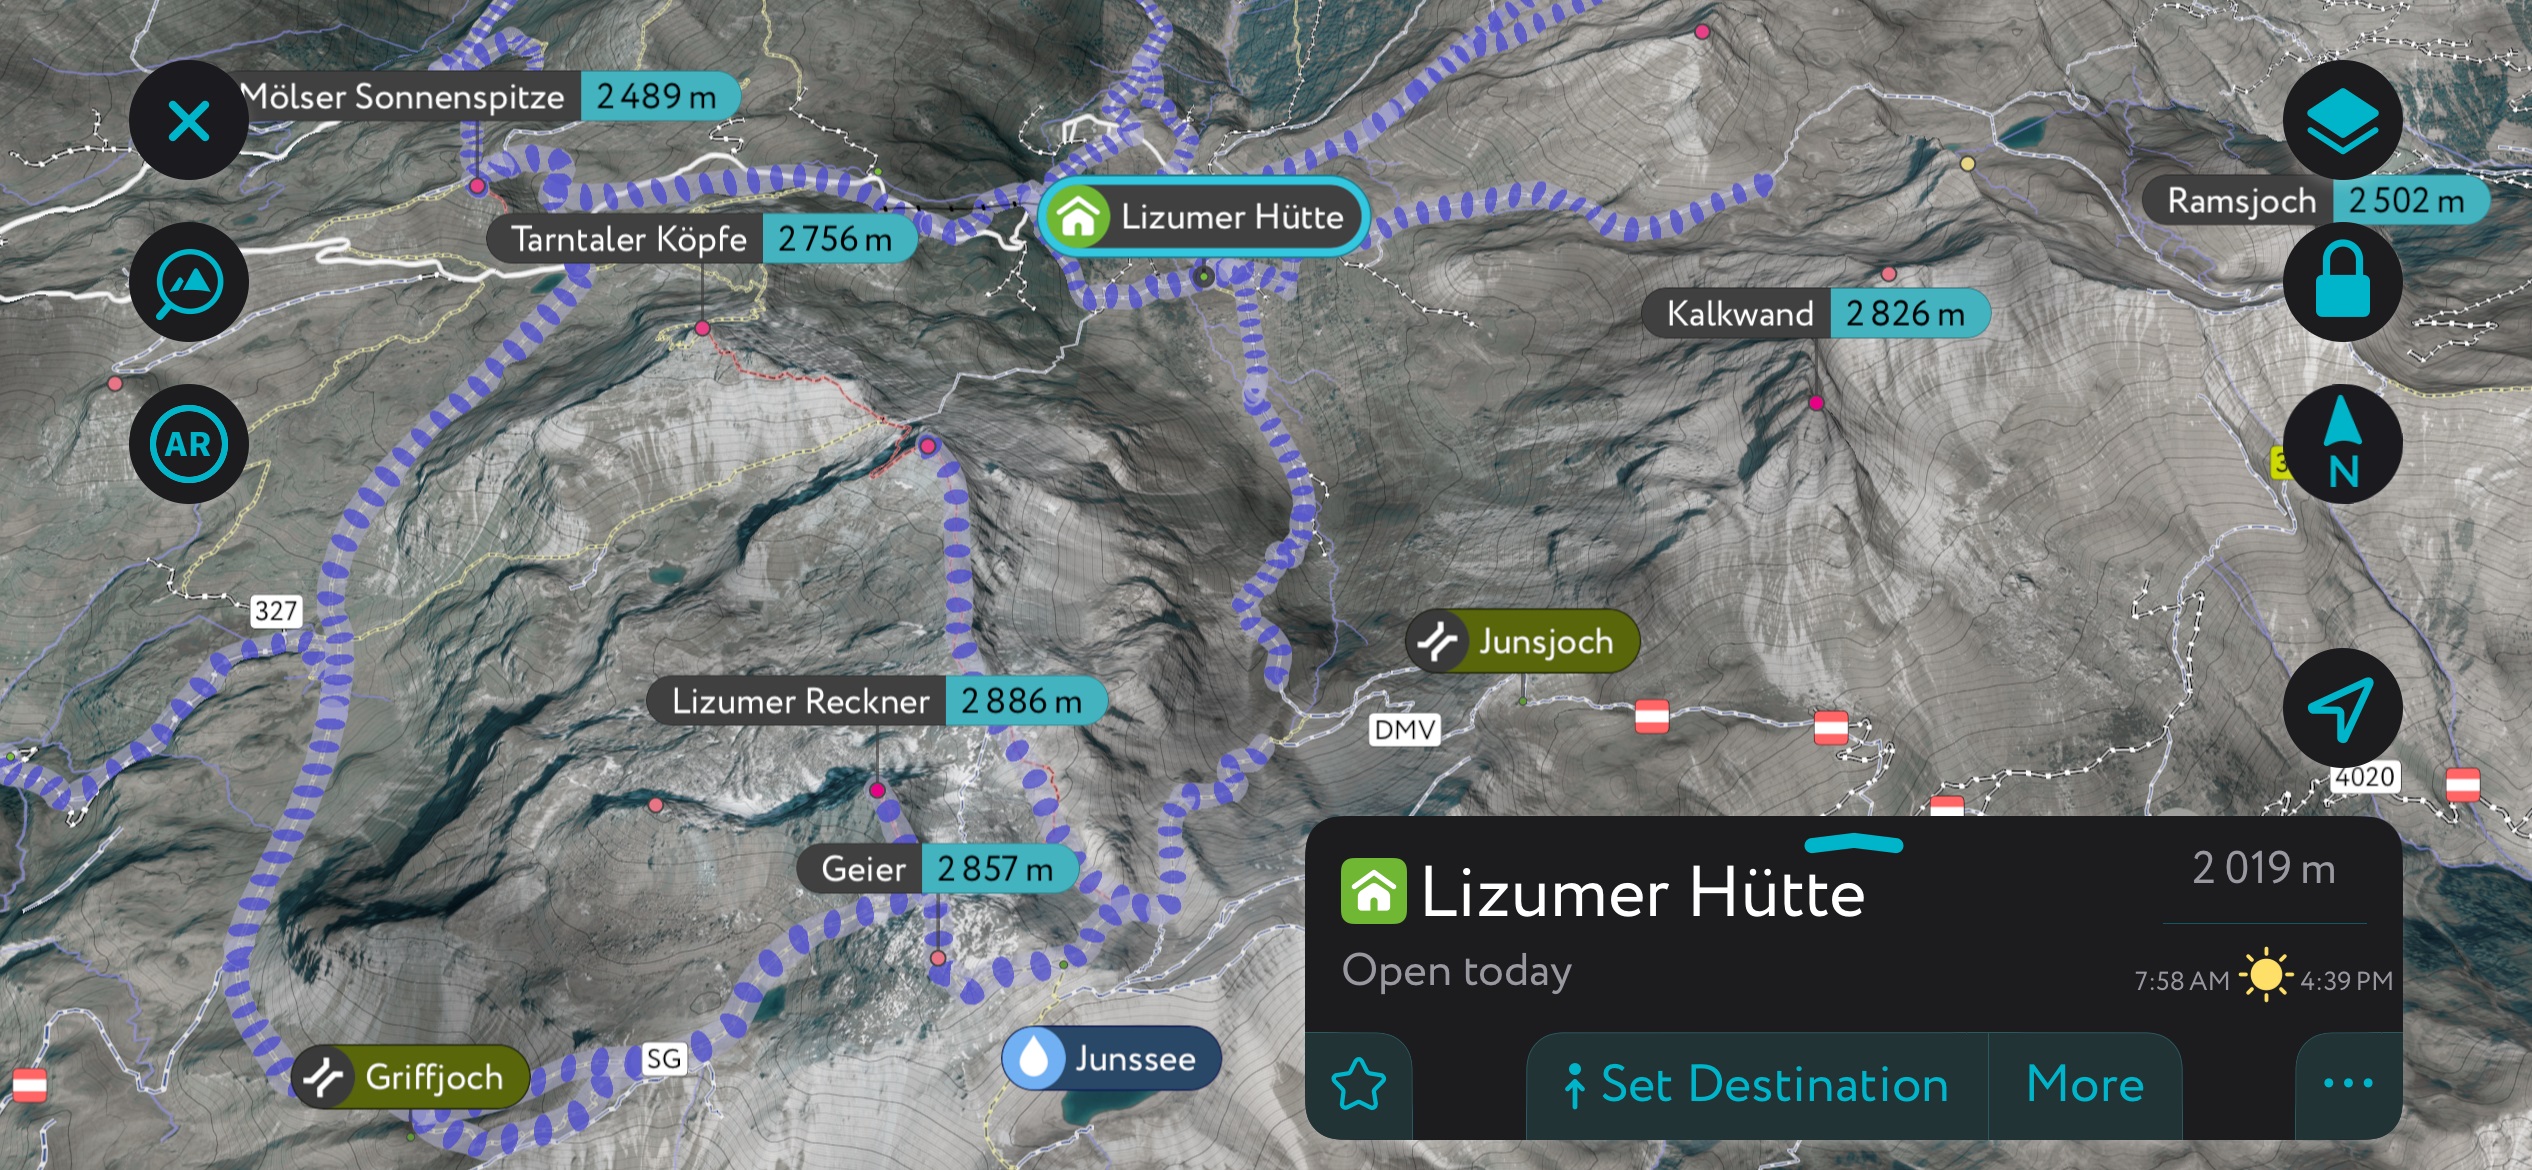 Terrain accessible from the Lizumer Hütte - including the Geier - on PeakVisor’s mobile app. Tux Alps